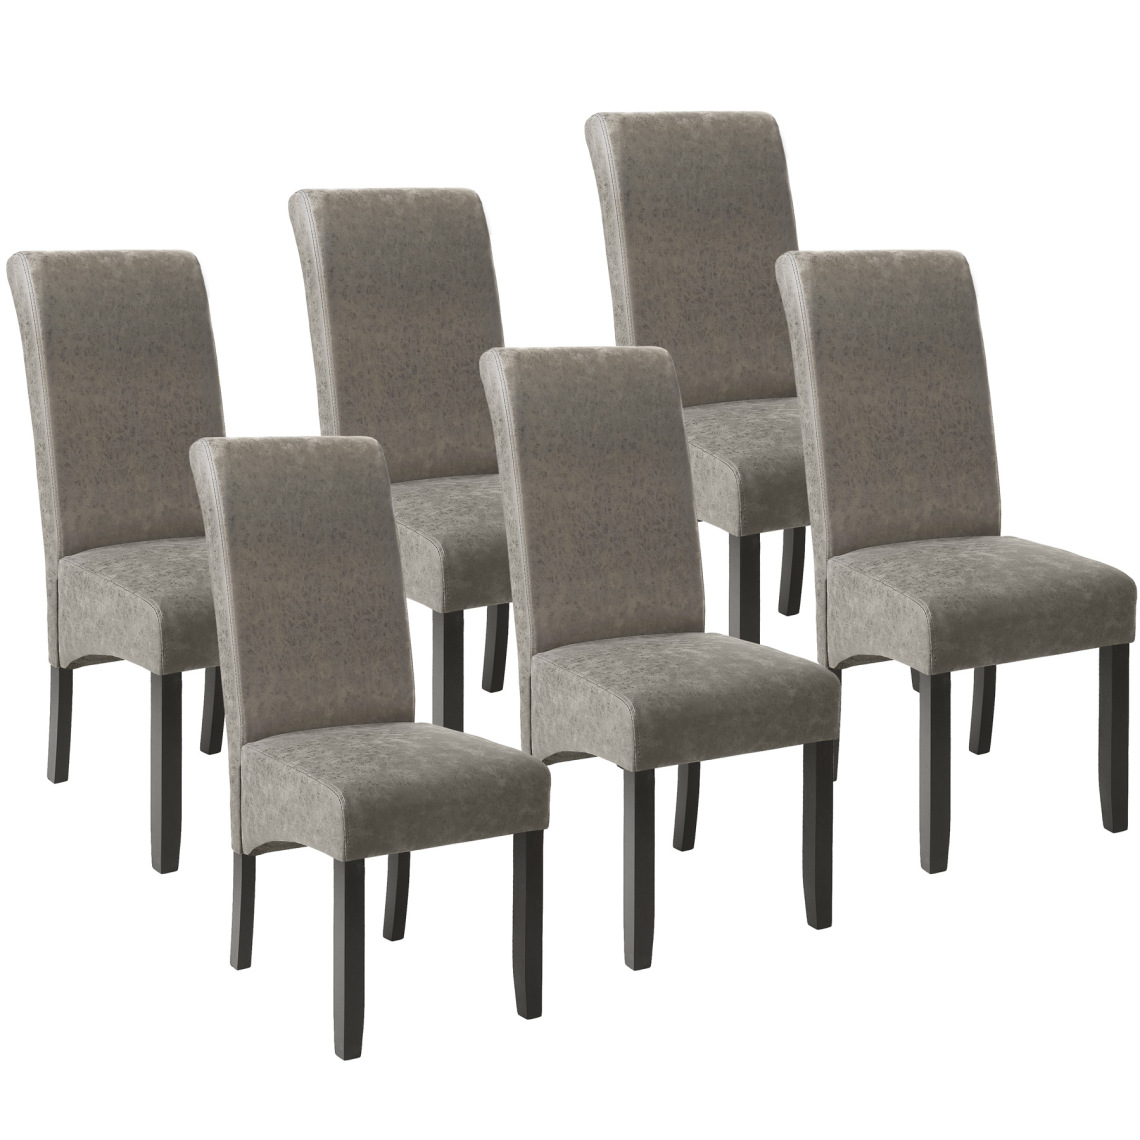 Tectake - Lot de 6 chaises aspect cuir - gris marbré - Chaises